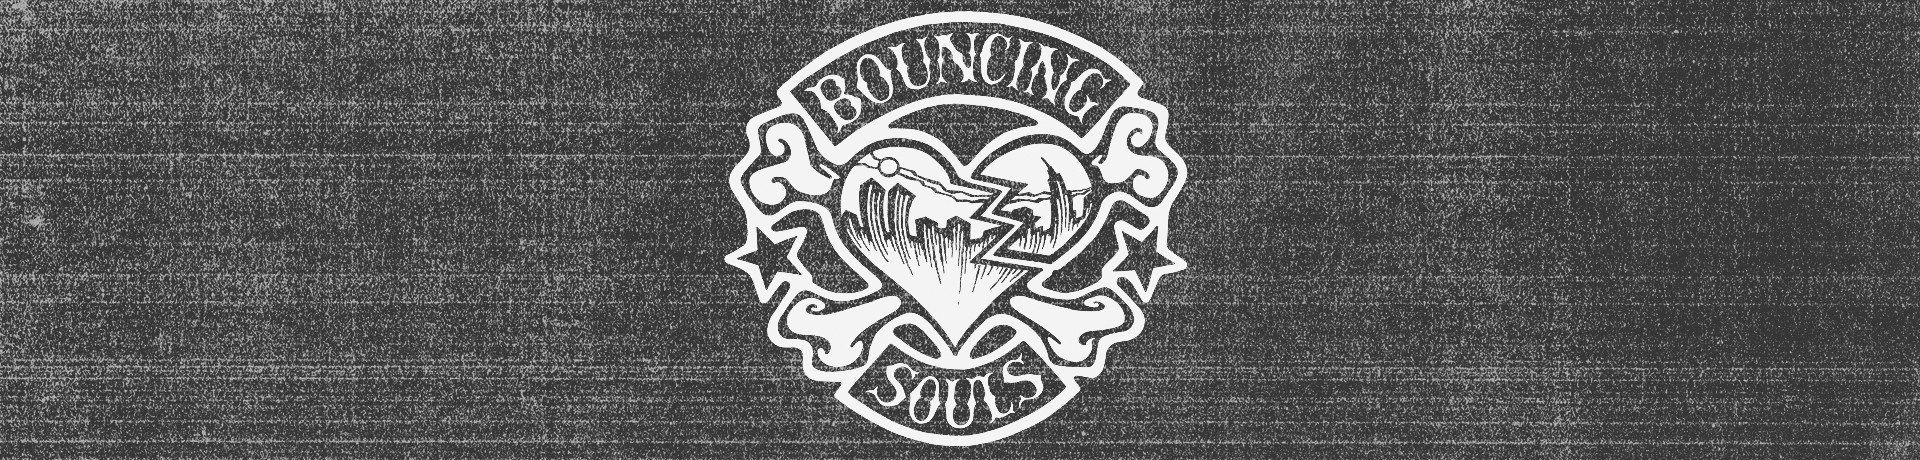 Bouncing Souls - Skull And Bones [Caneca]